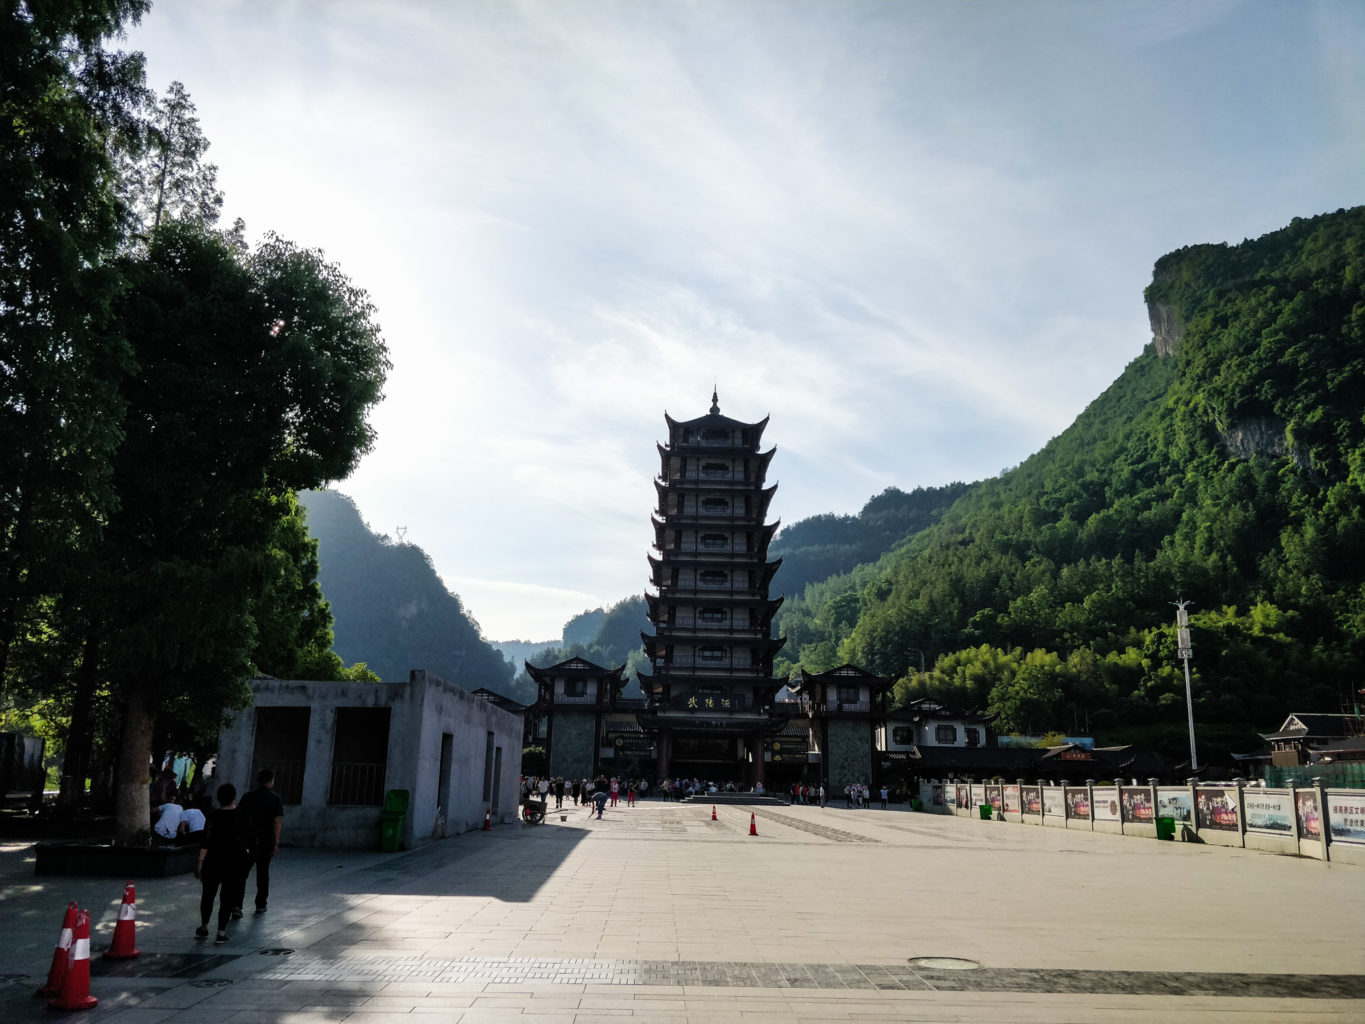 Wejście do parku Zhangjiajie